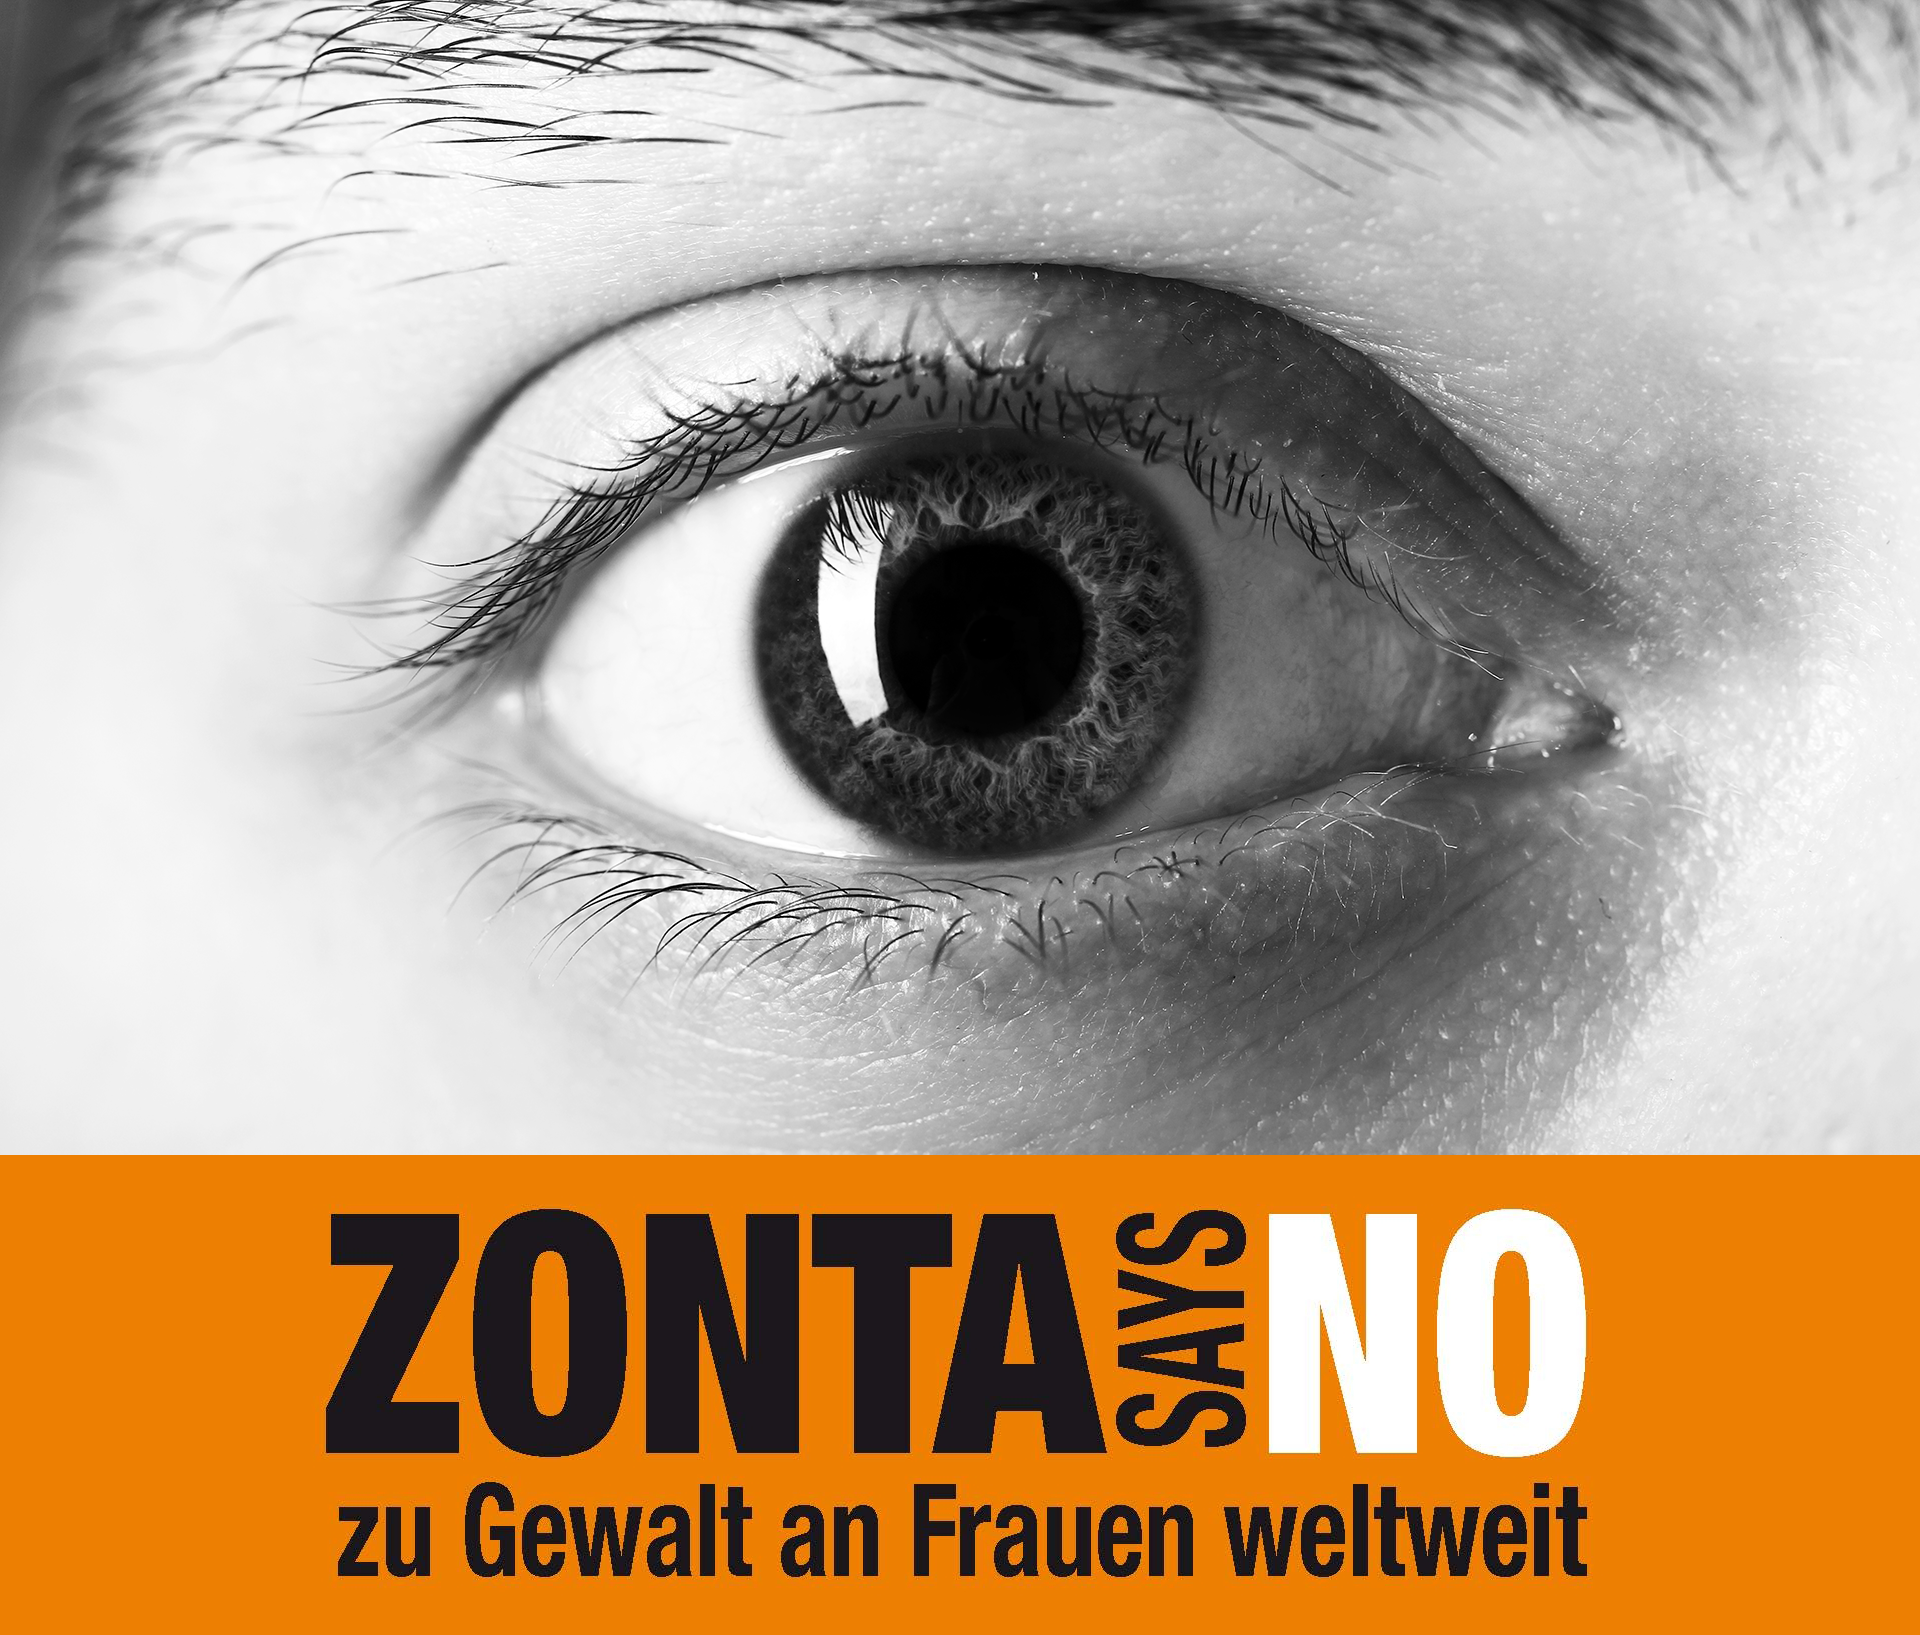 Zonta Says No